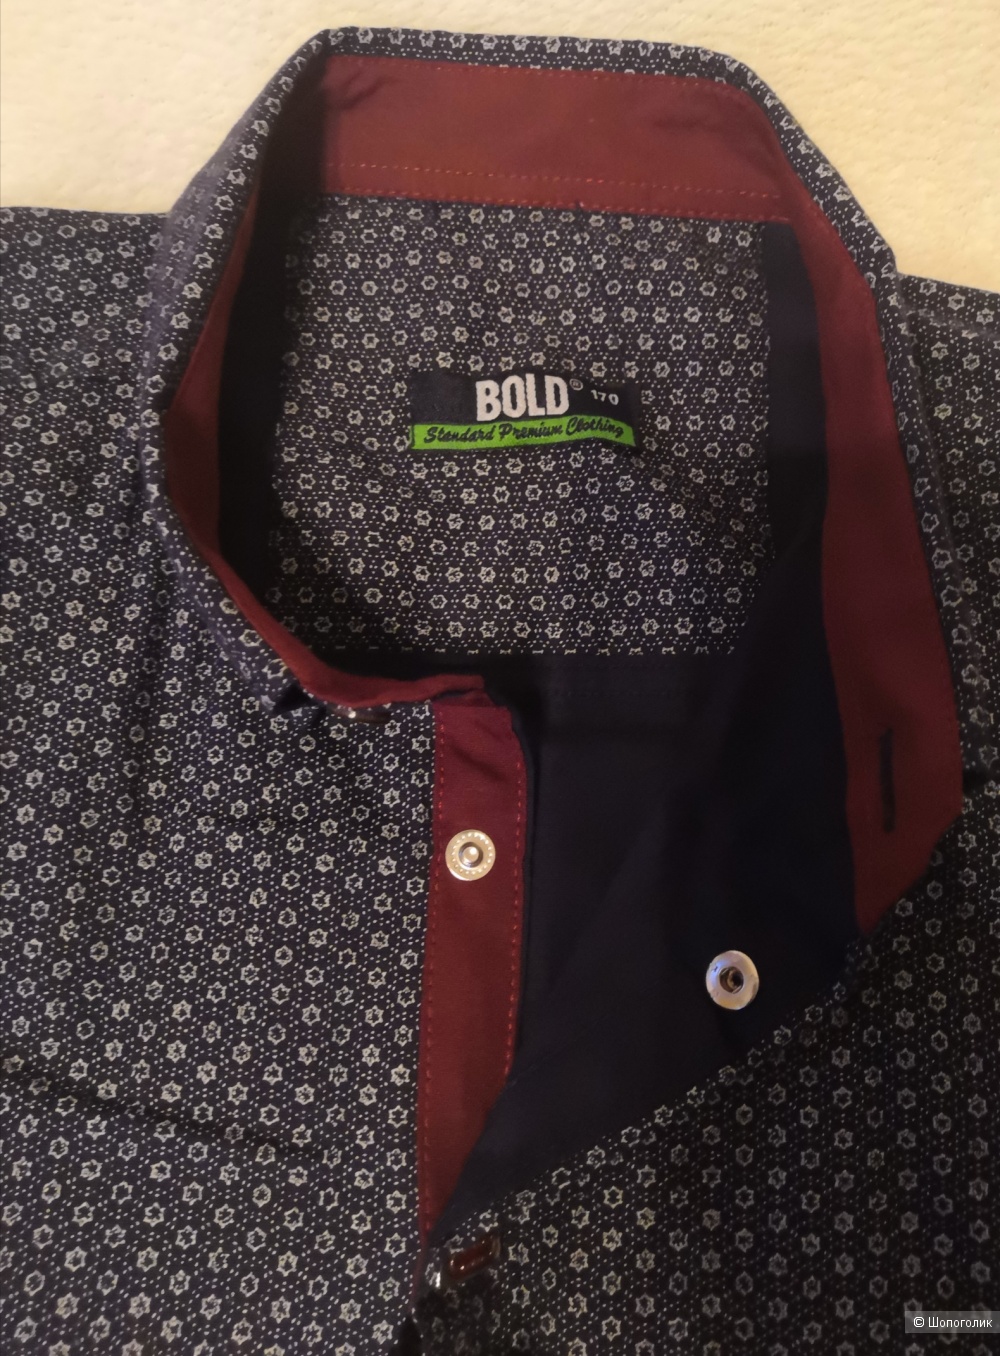 Рубашка Bold, размер 170